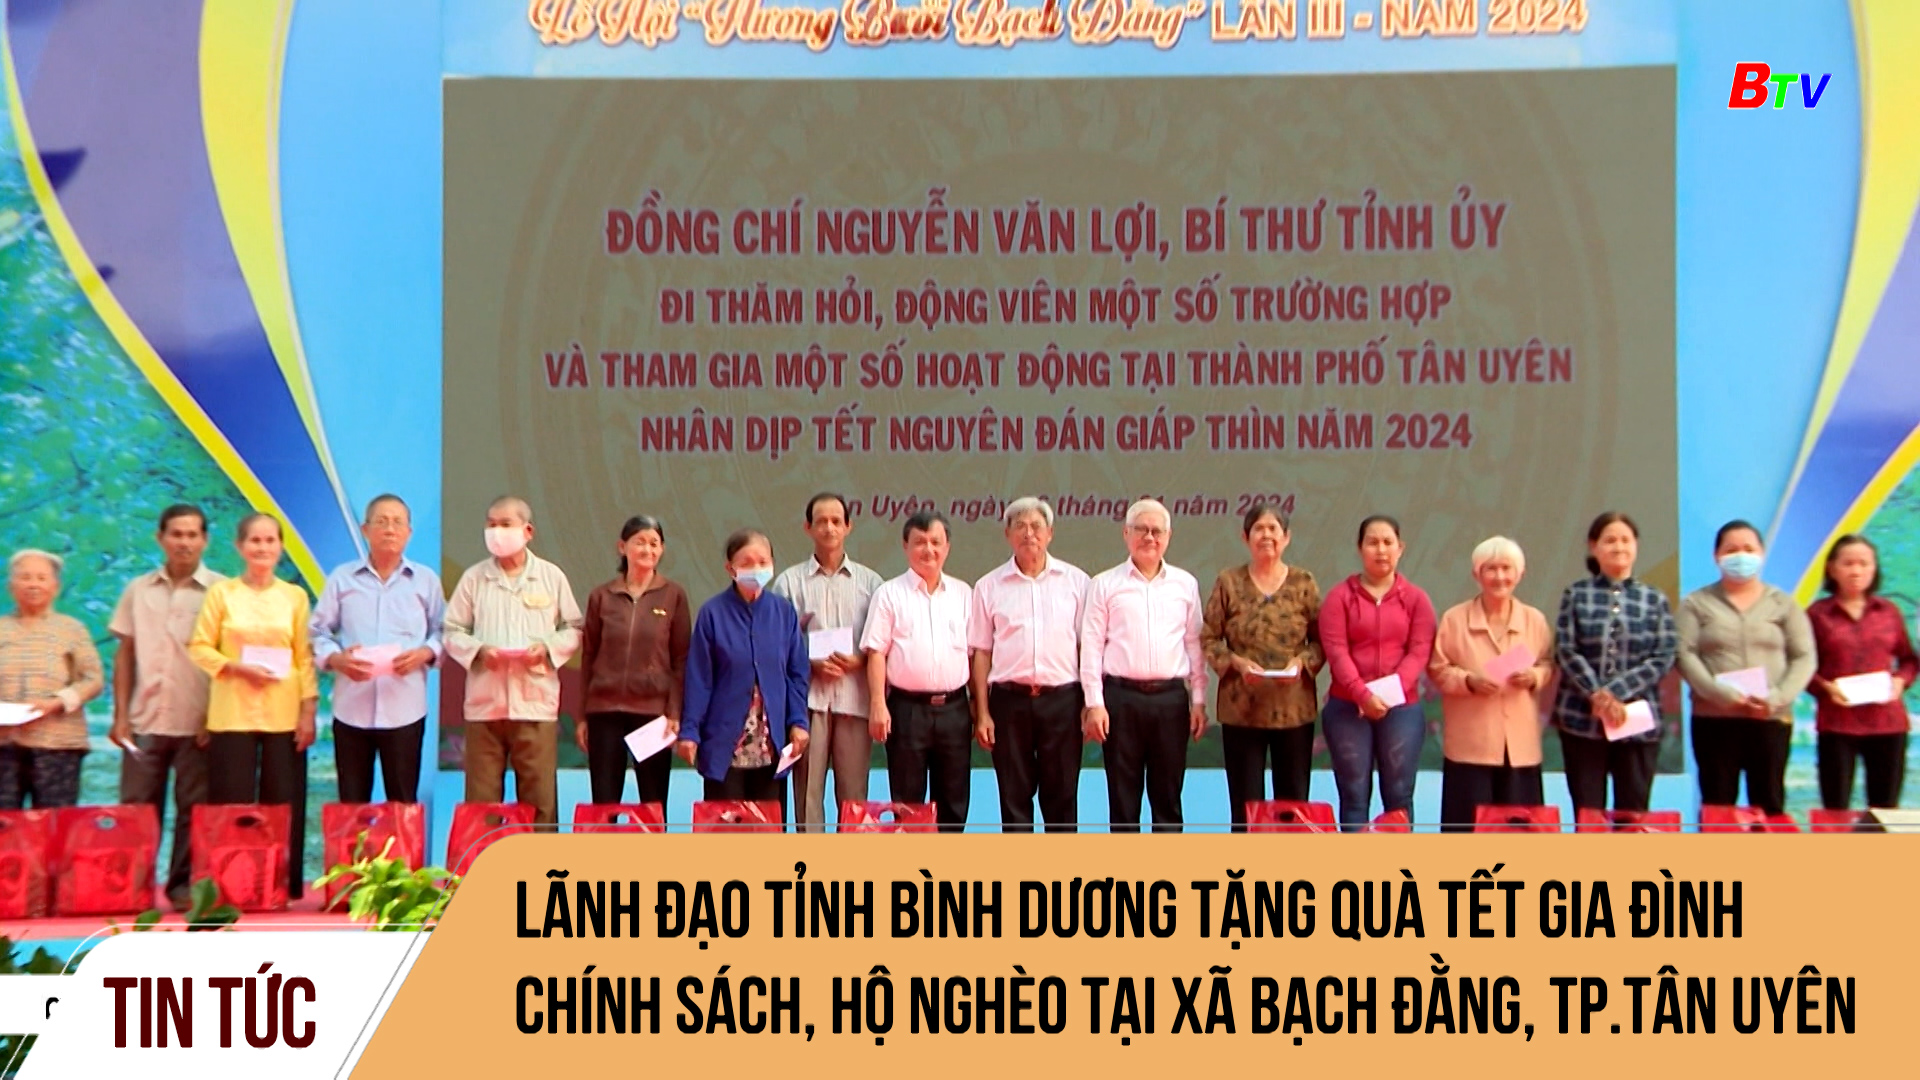 Lãnh đạo tỉnh Bình Dương tặng quà tết gia đình chính sách, hộ nghèo tại xã Bạch Đằng, TP.Tân Uyên